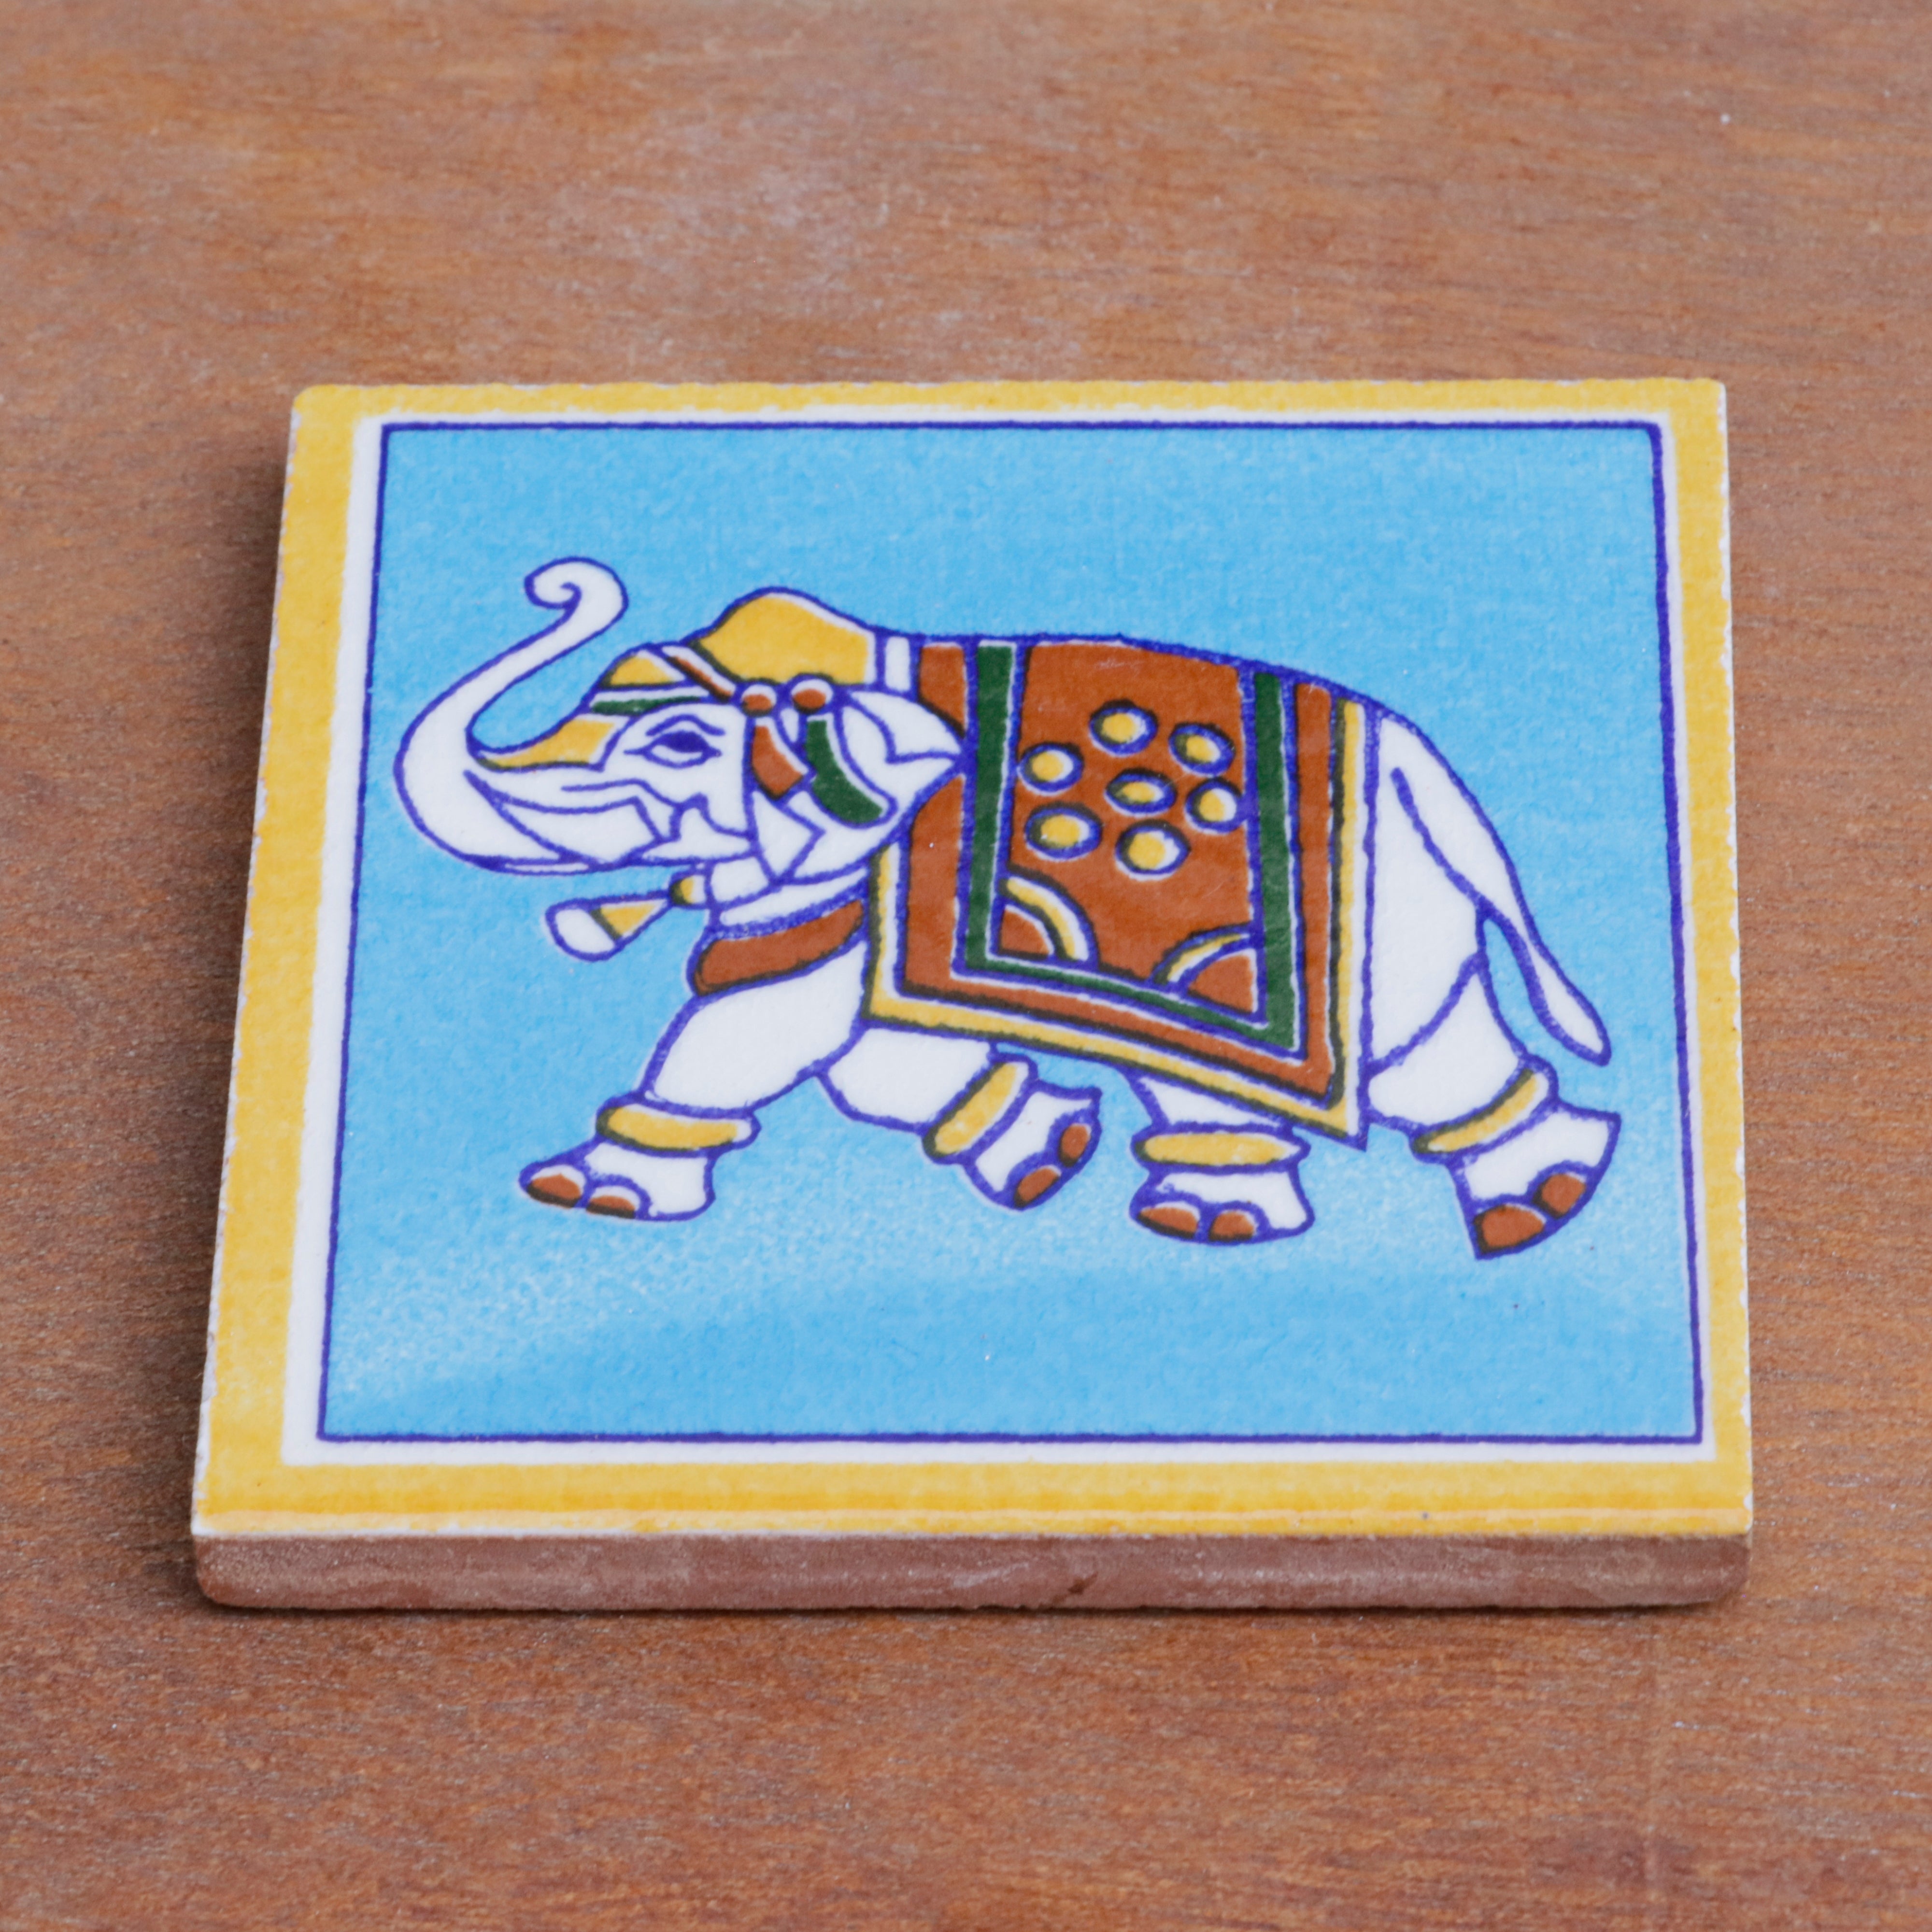 Irish Classic Finished Elephant Designed Ceramic Square Tile Set of 2 Ceramic Tile